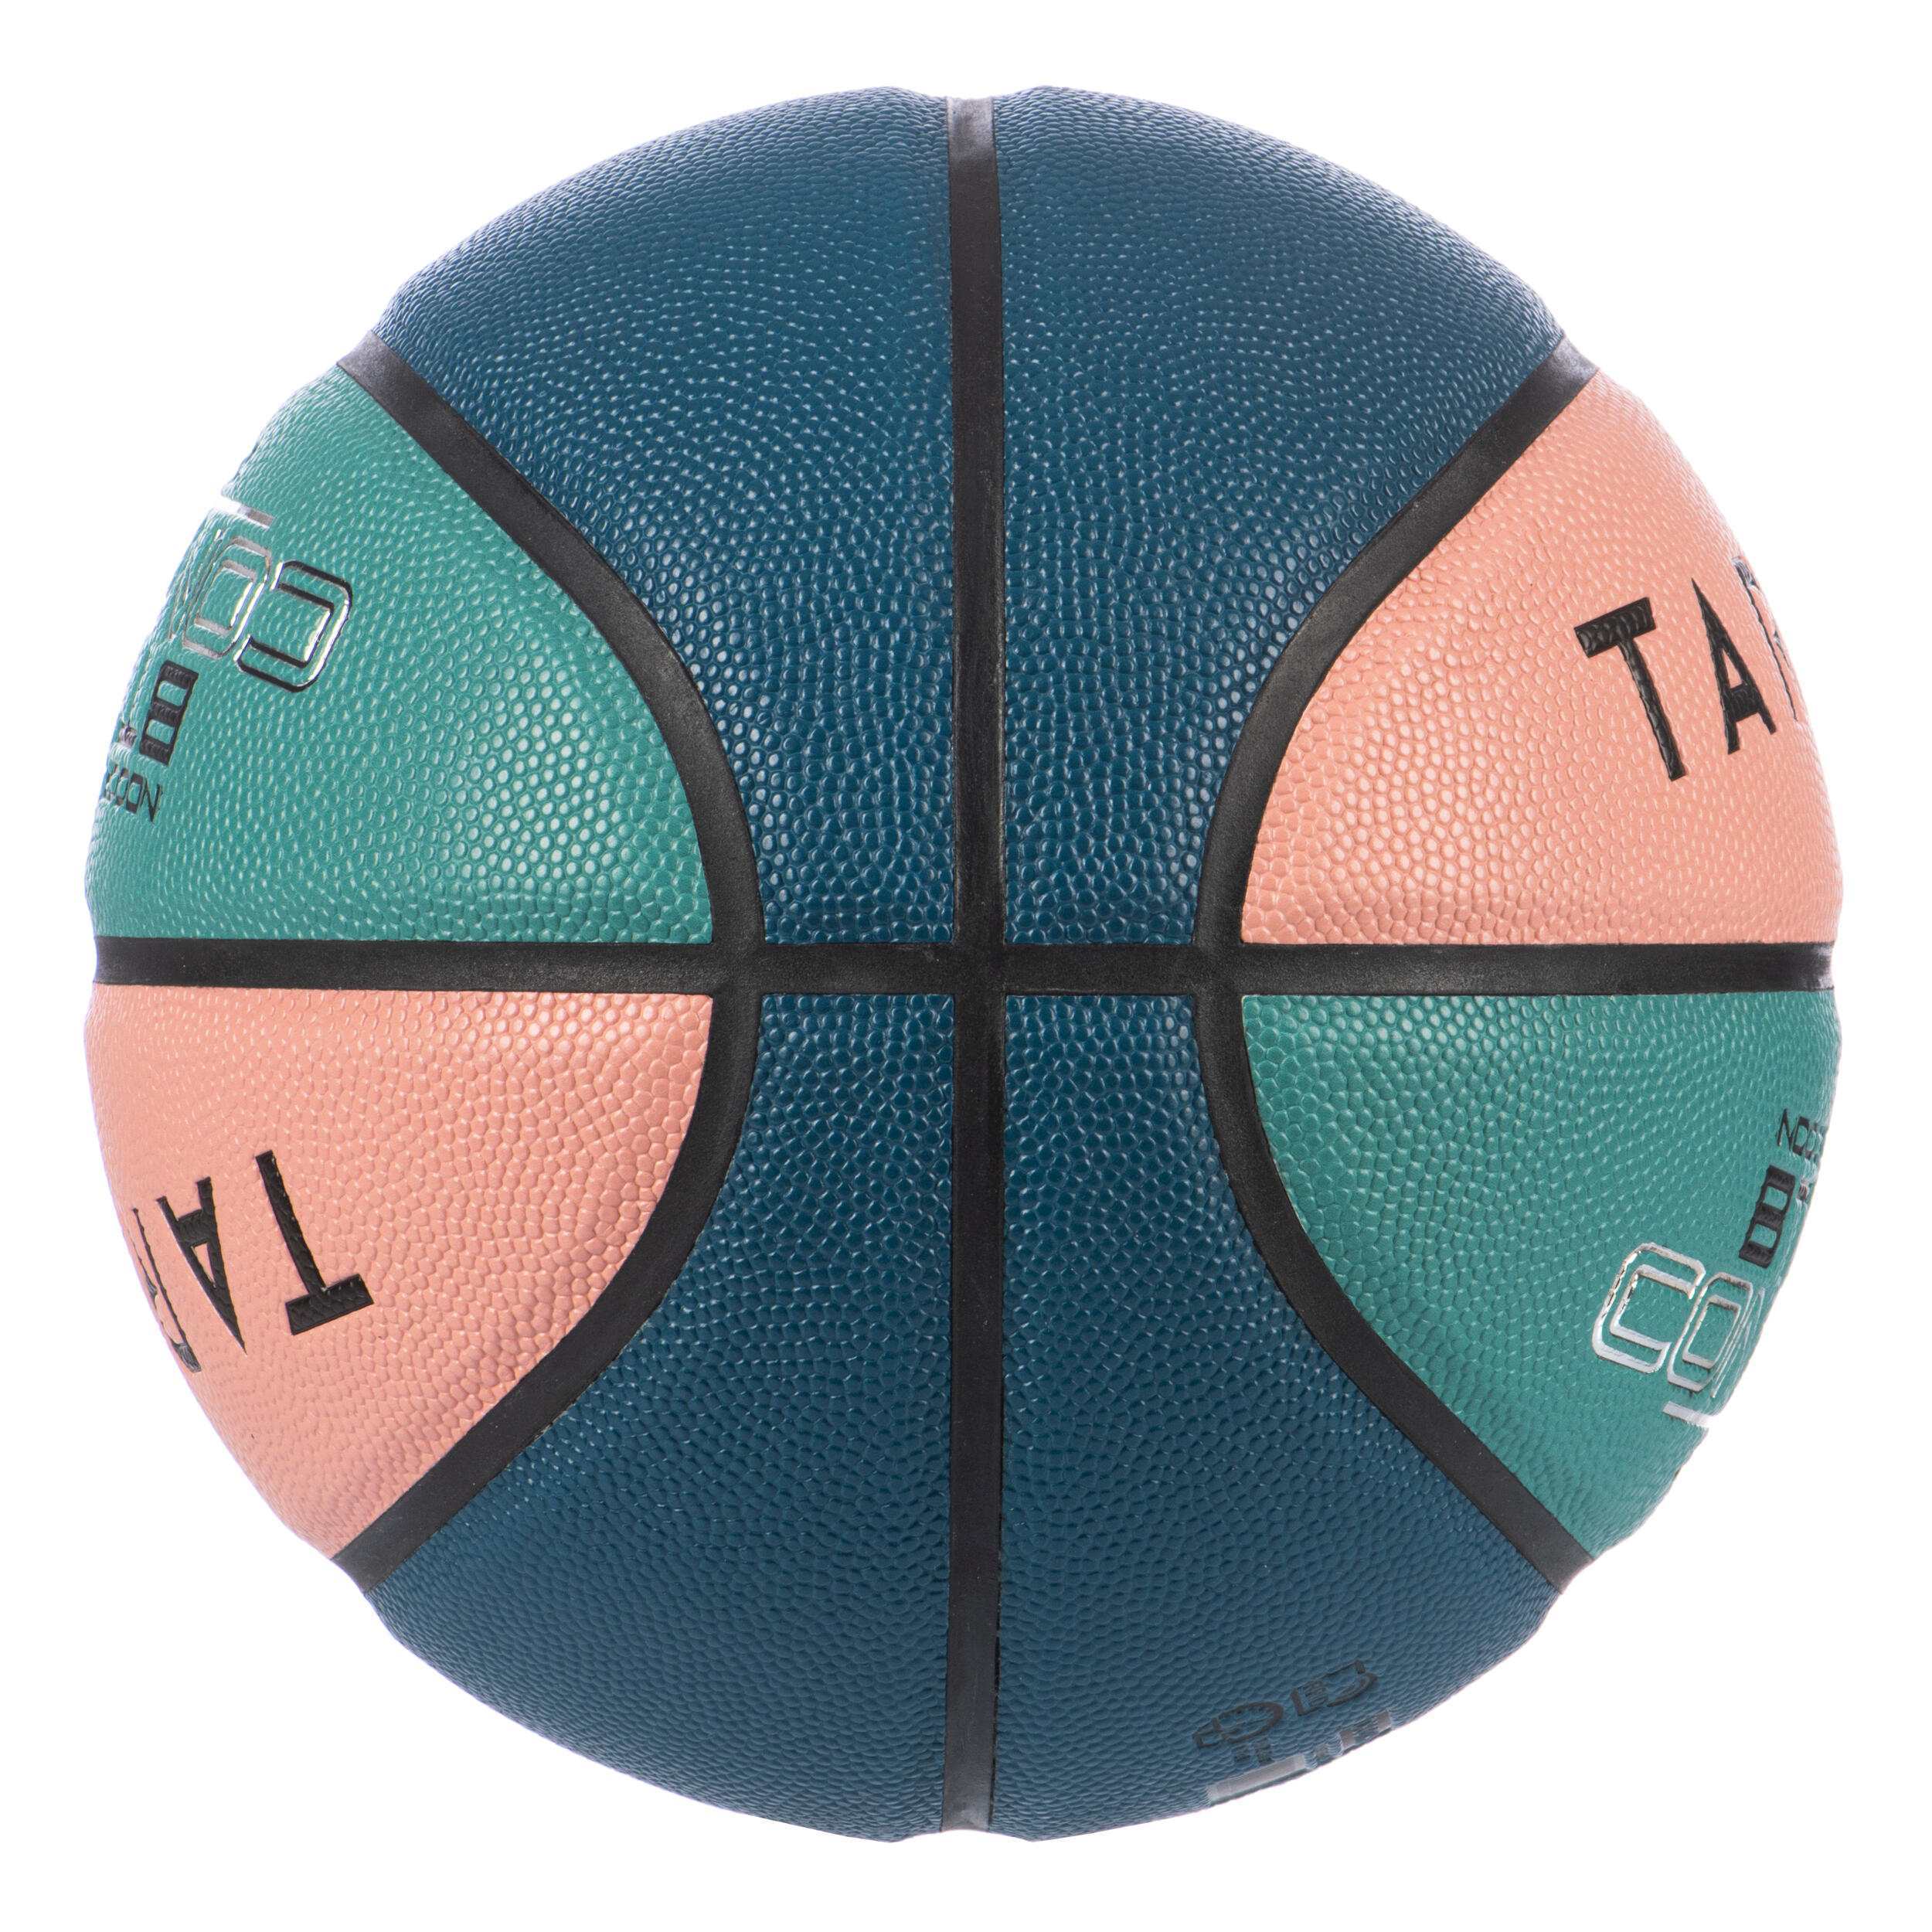 Size 6 Basketball BT500 - Pink/Green/Blue 5/5